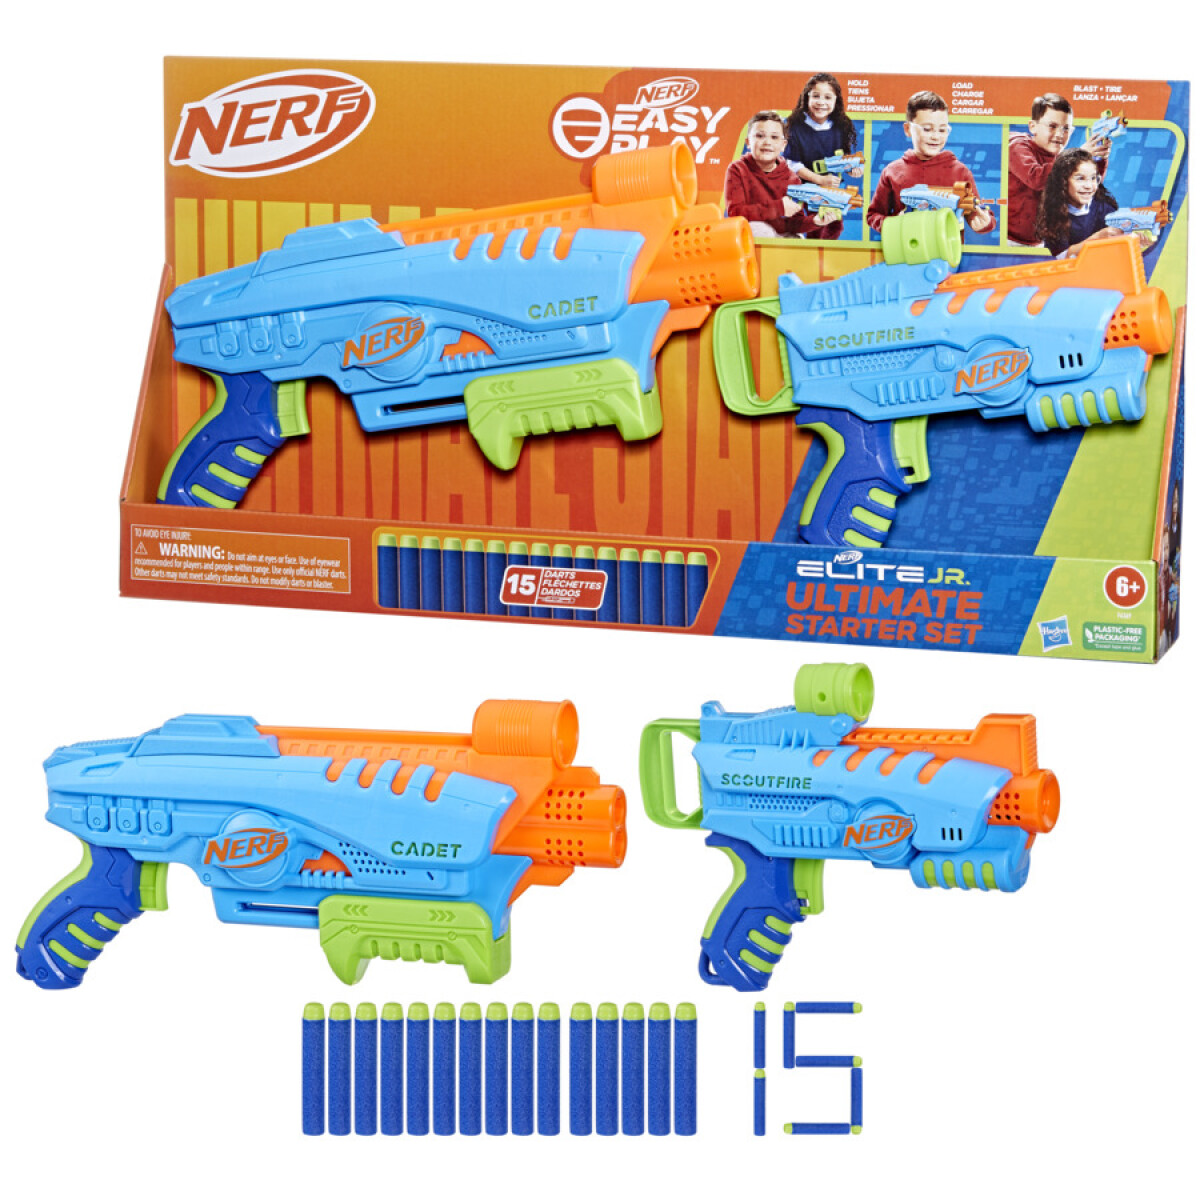 Set de Pistolas Nerf Elite Junior Ultimate Starter Dardos - 001 